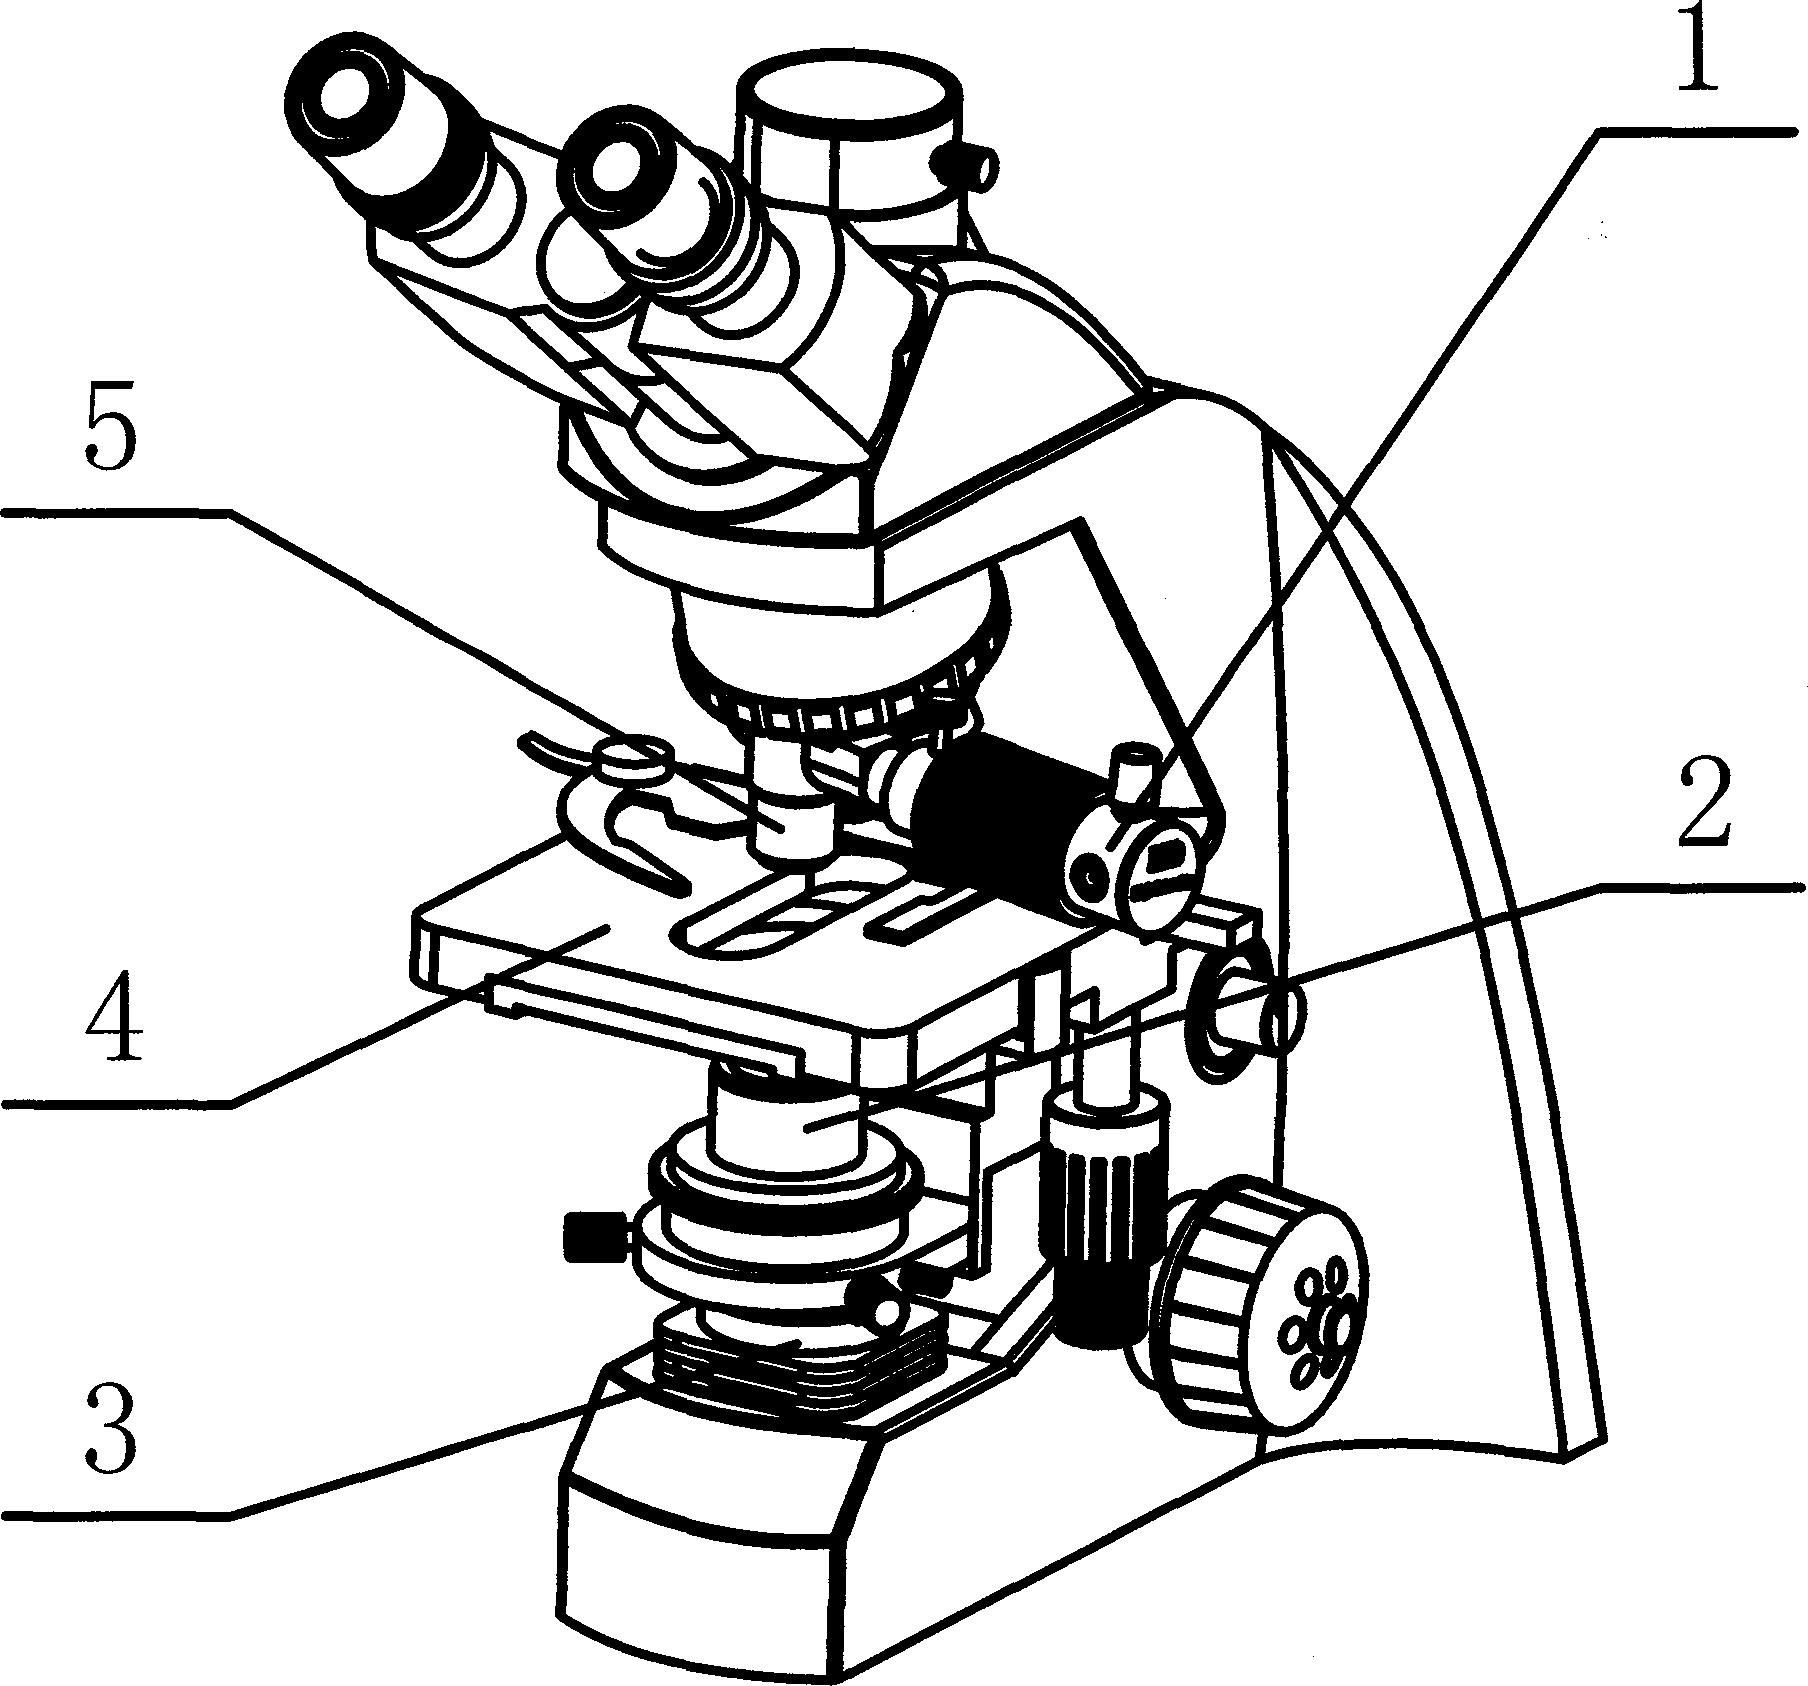 显微镜的结构图 手绘图片